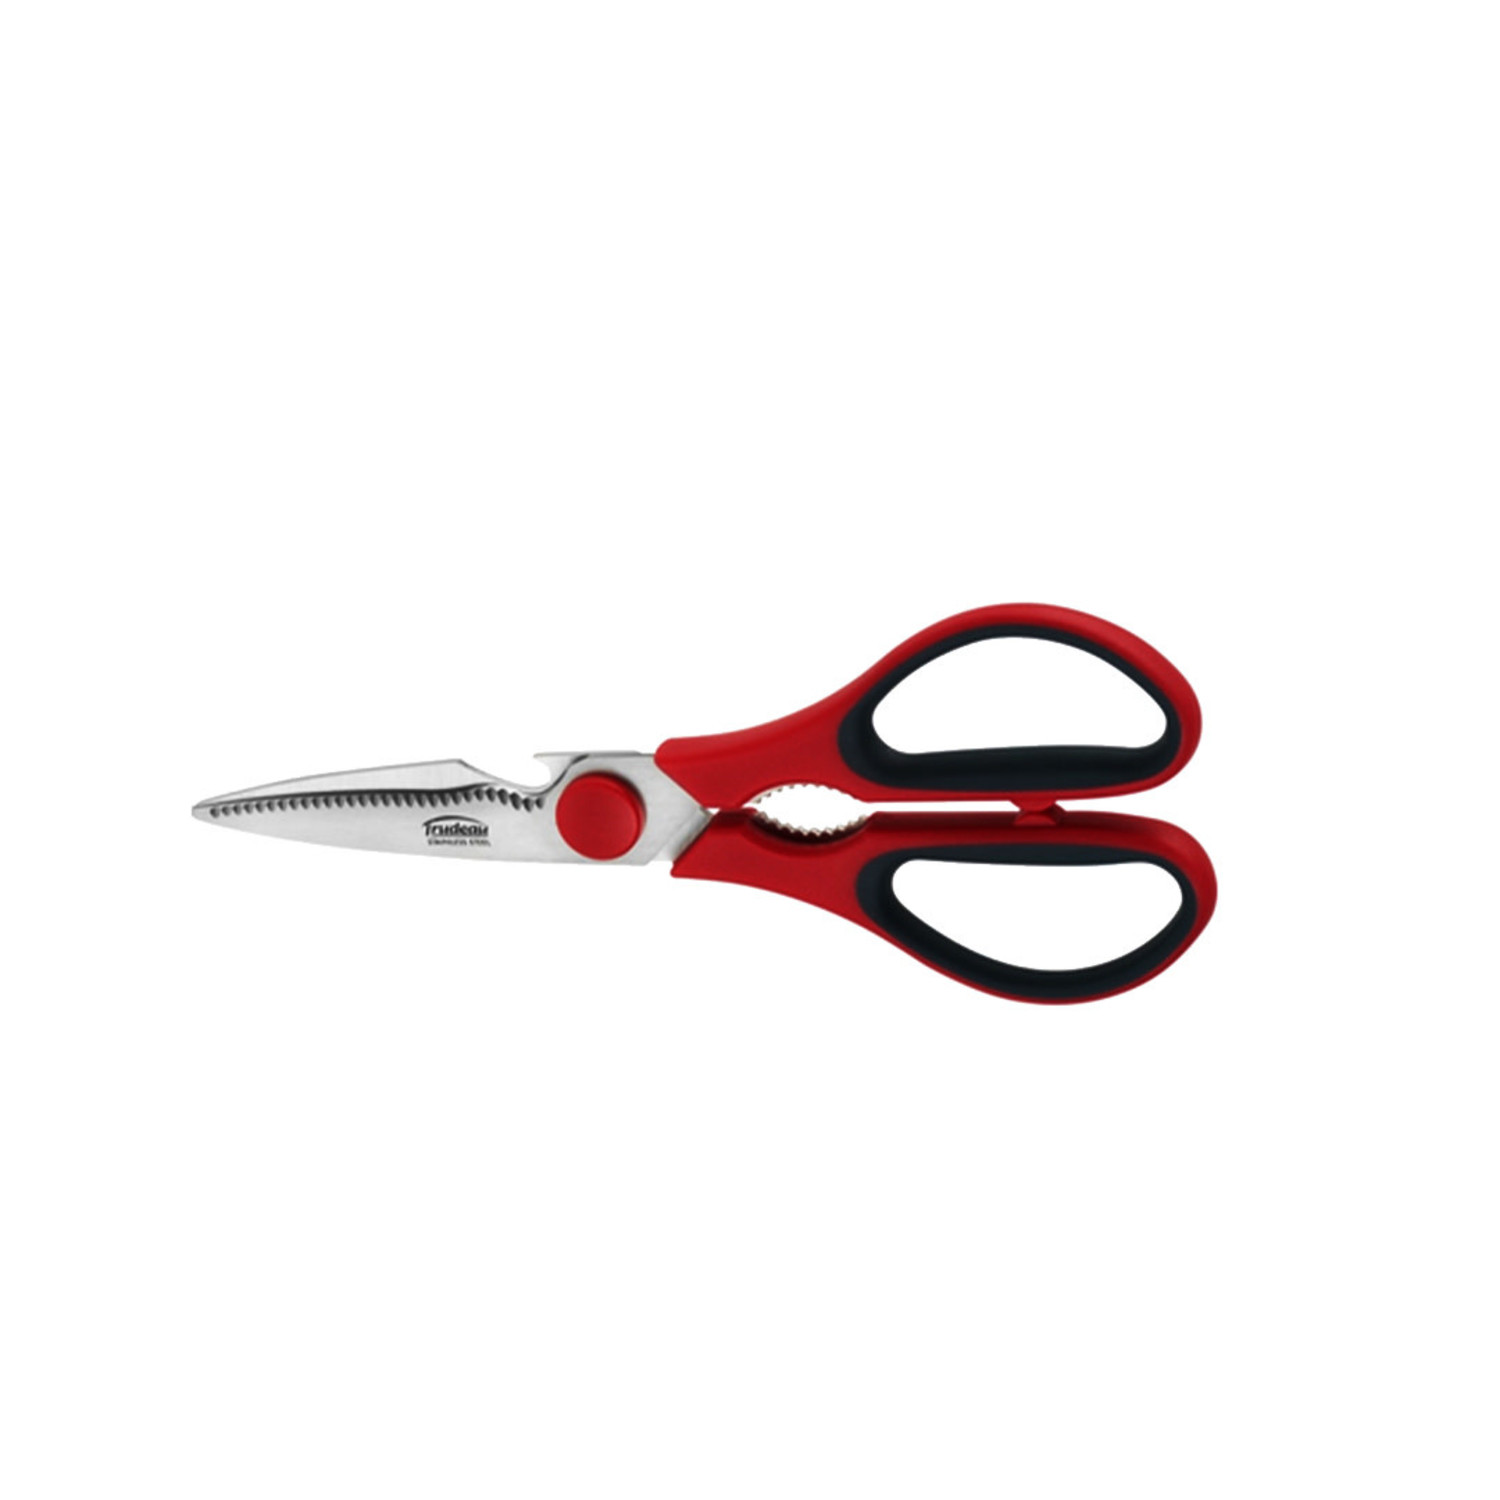 Best kitchen scissors to buy 2023 – to transform kitchen tasks